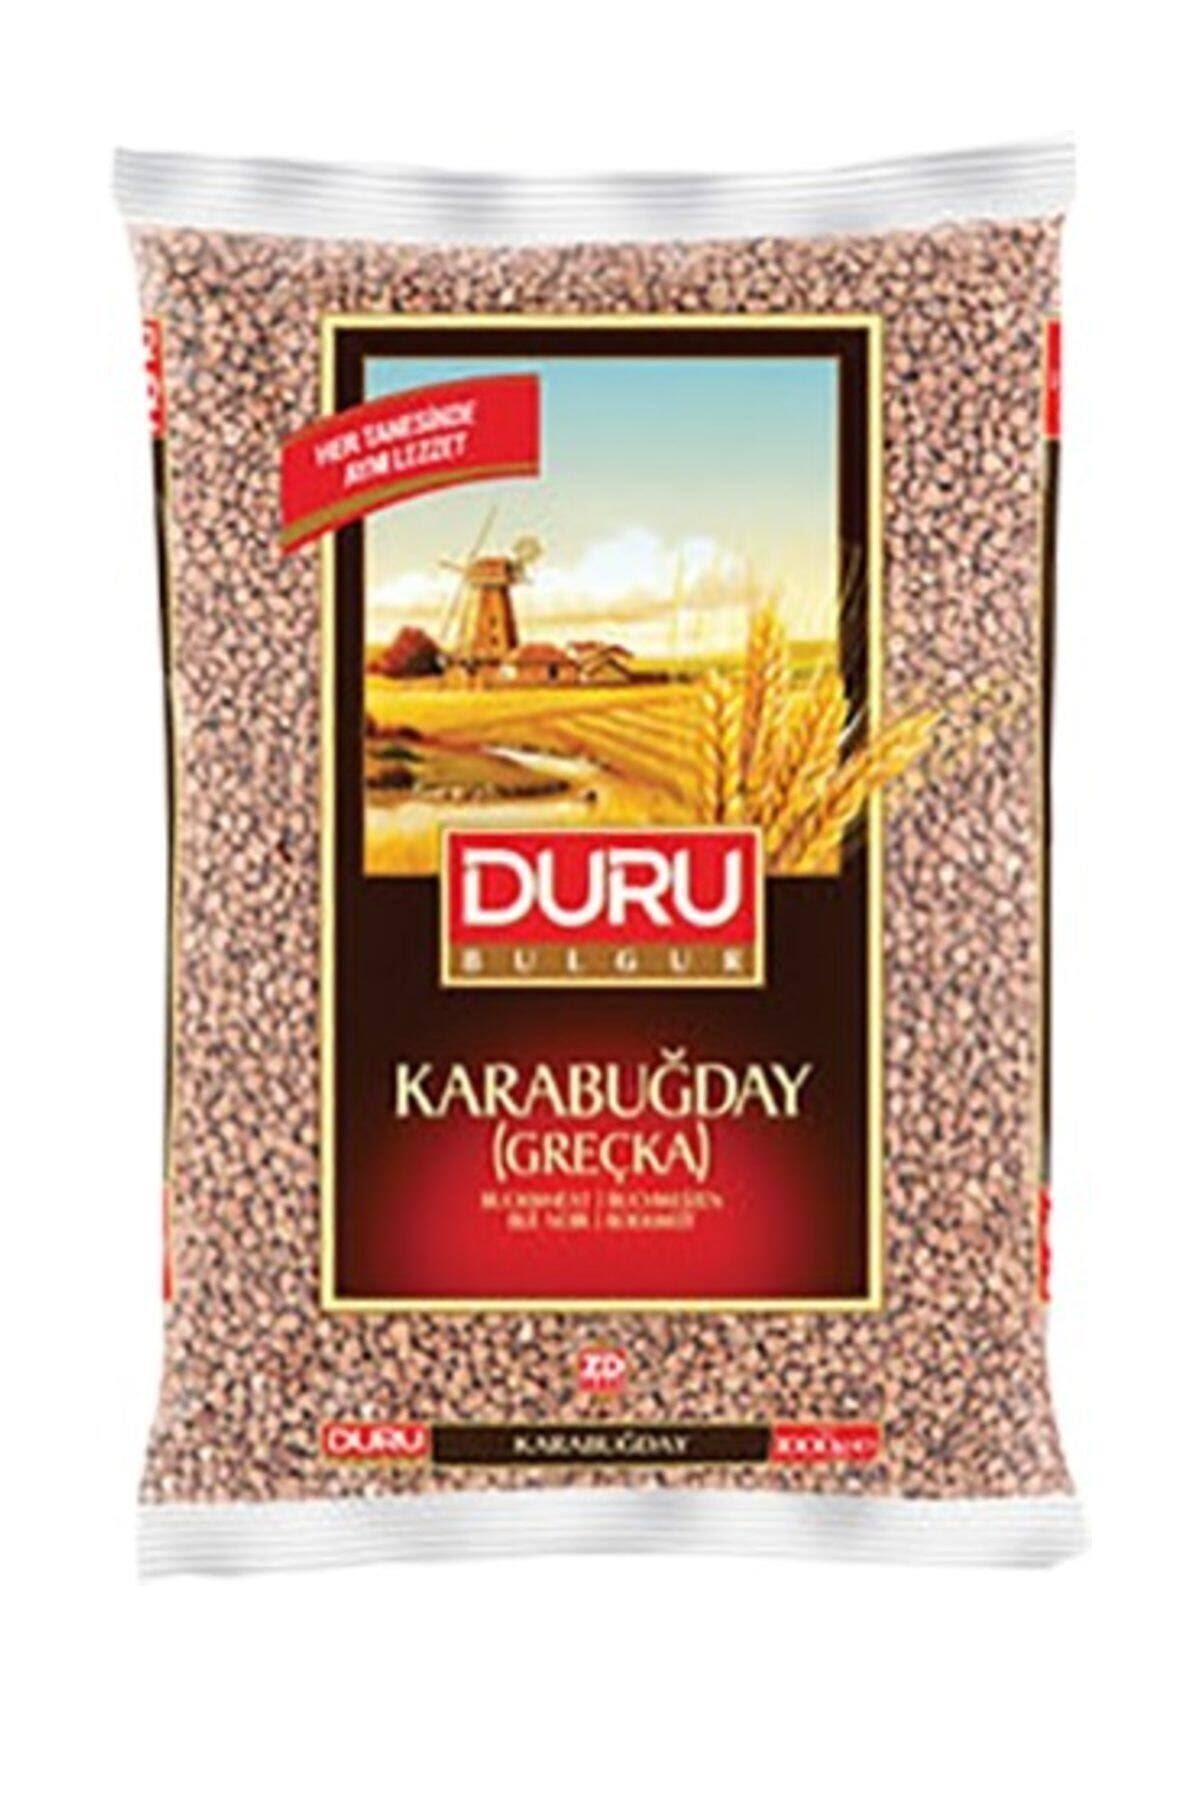 Duru Shelled Wheat 1kg Bag